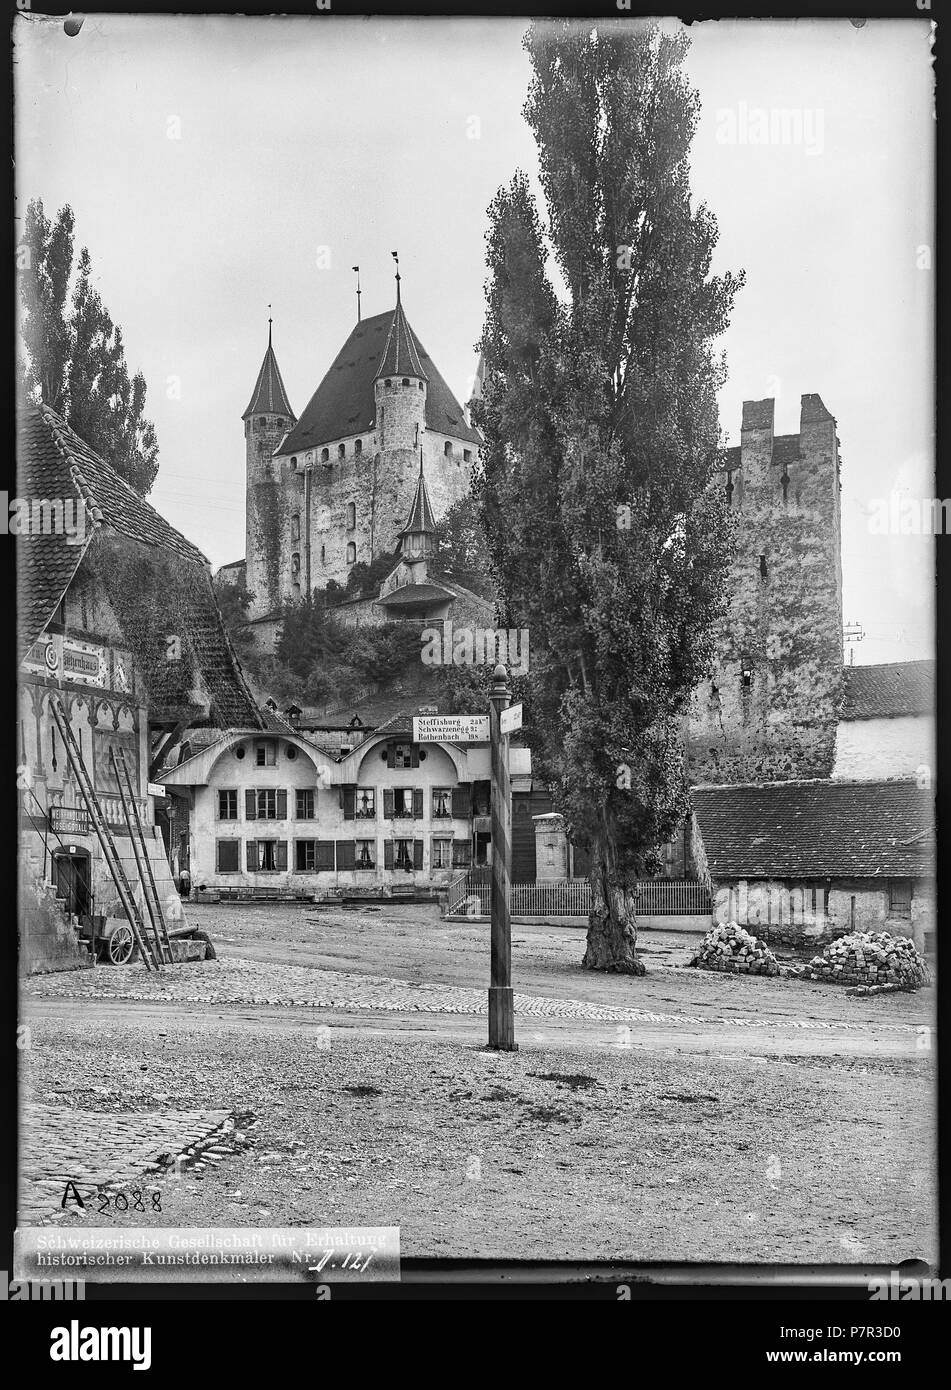 83 CH-NB - Thun, Schloss und Berntor, vue partielle extérieure - Collection Max van Berchem - EAD-6703 Stock Photo